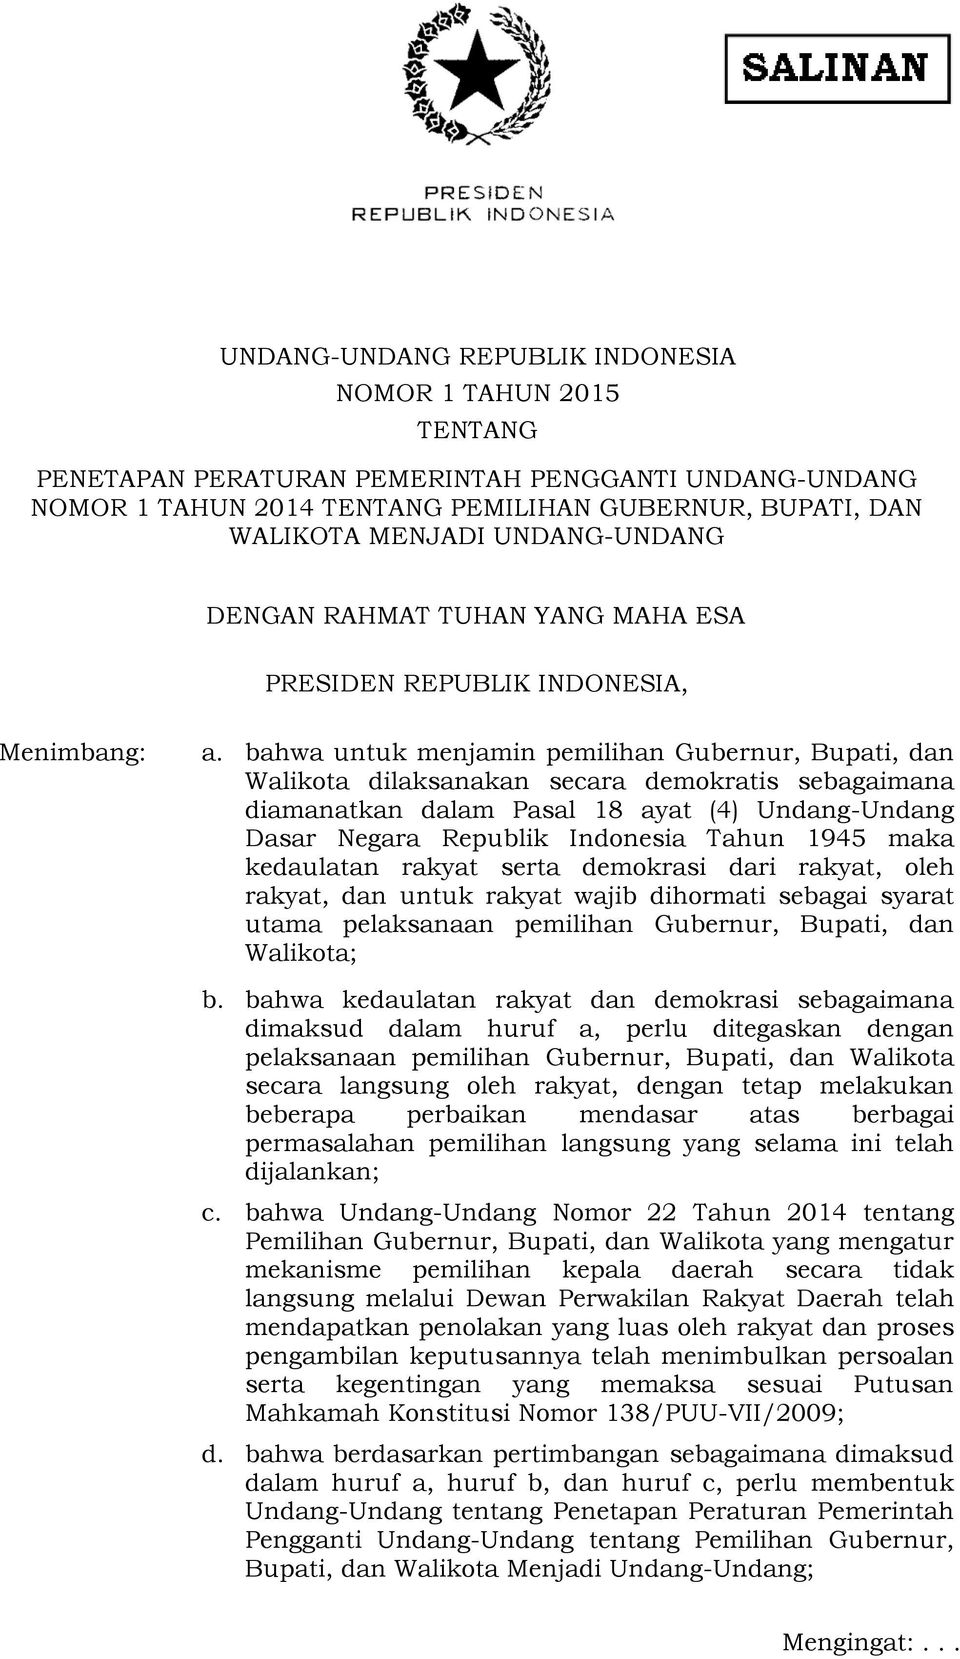 bahwa untuk menjamin pemilihan Gubernur, Bupati, dan Walikota dilaksanakan secara demokratis sebagaimana diamanatkan dalam Pasal 18 ayat (4) Undang-Undang Dasar Negara Republik Indonesia Tahun 1945